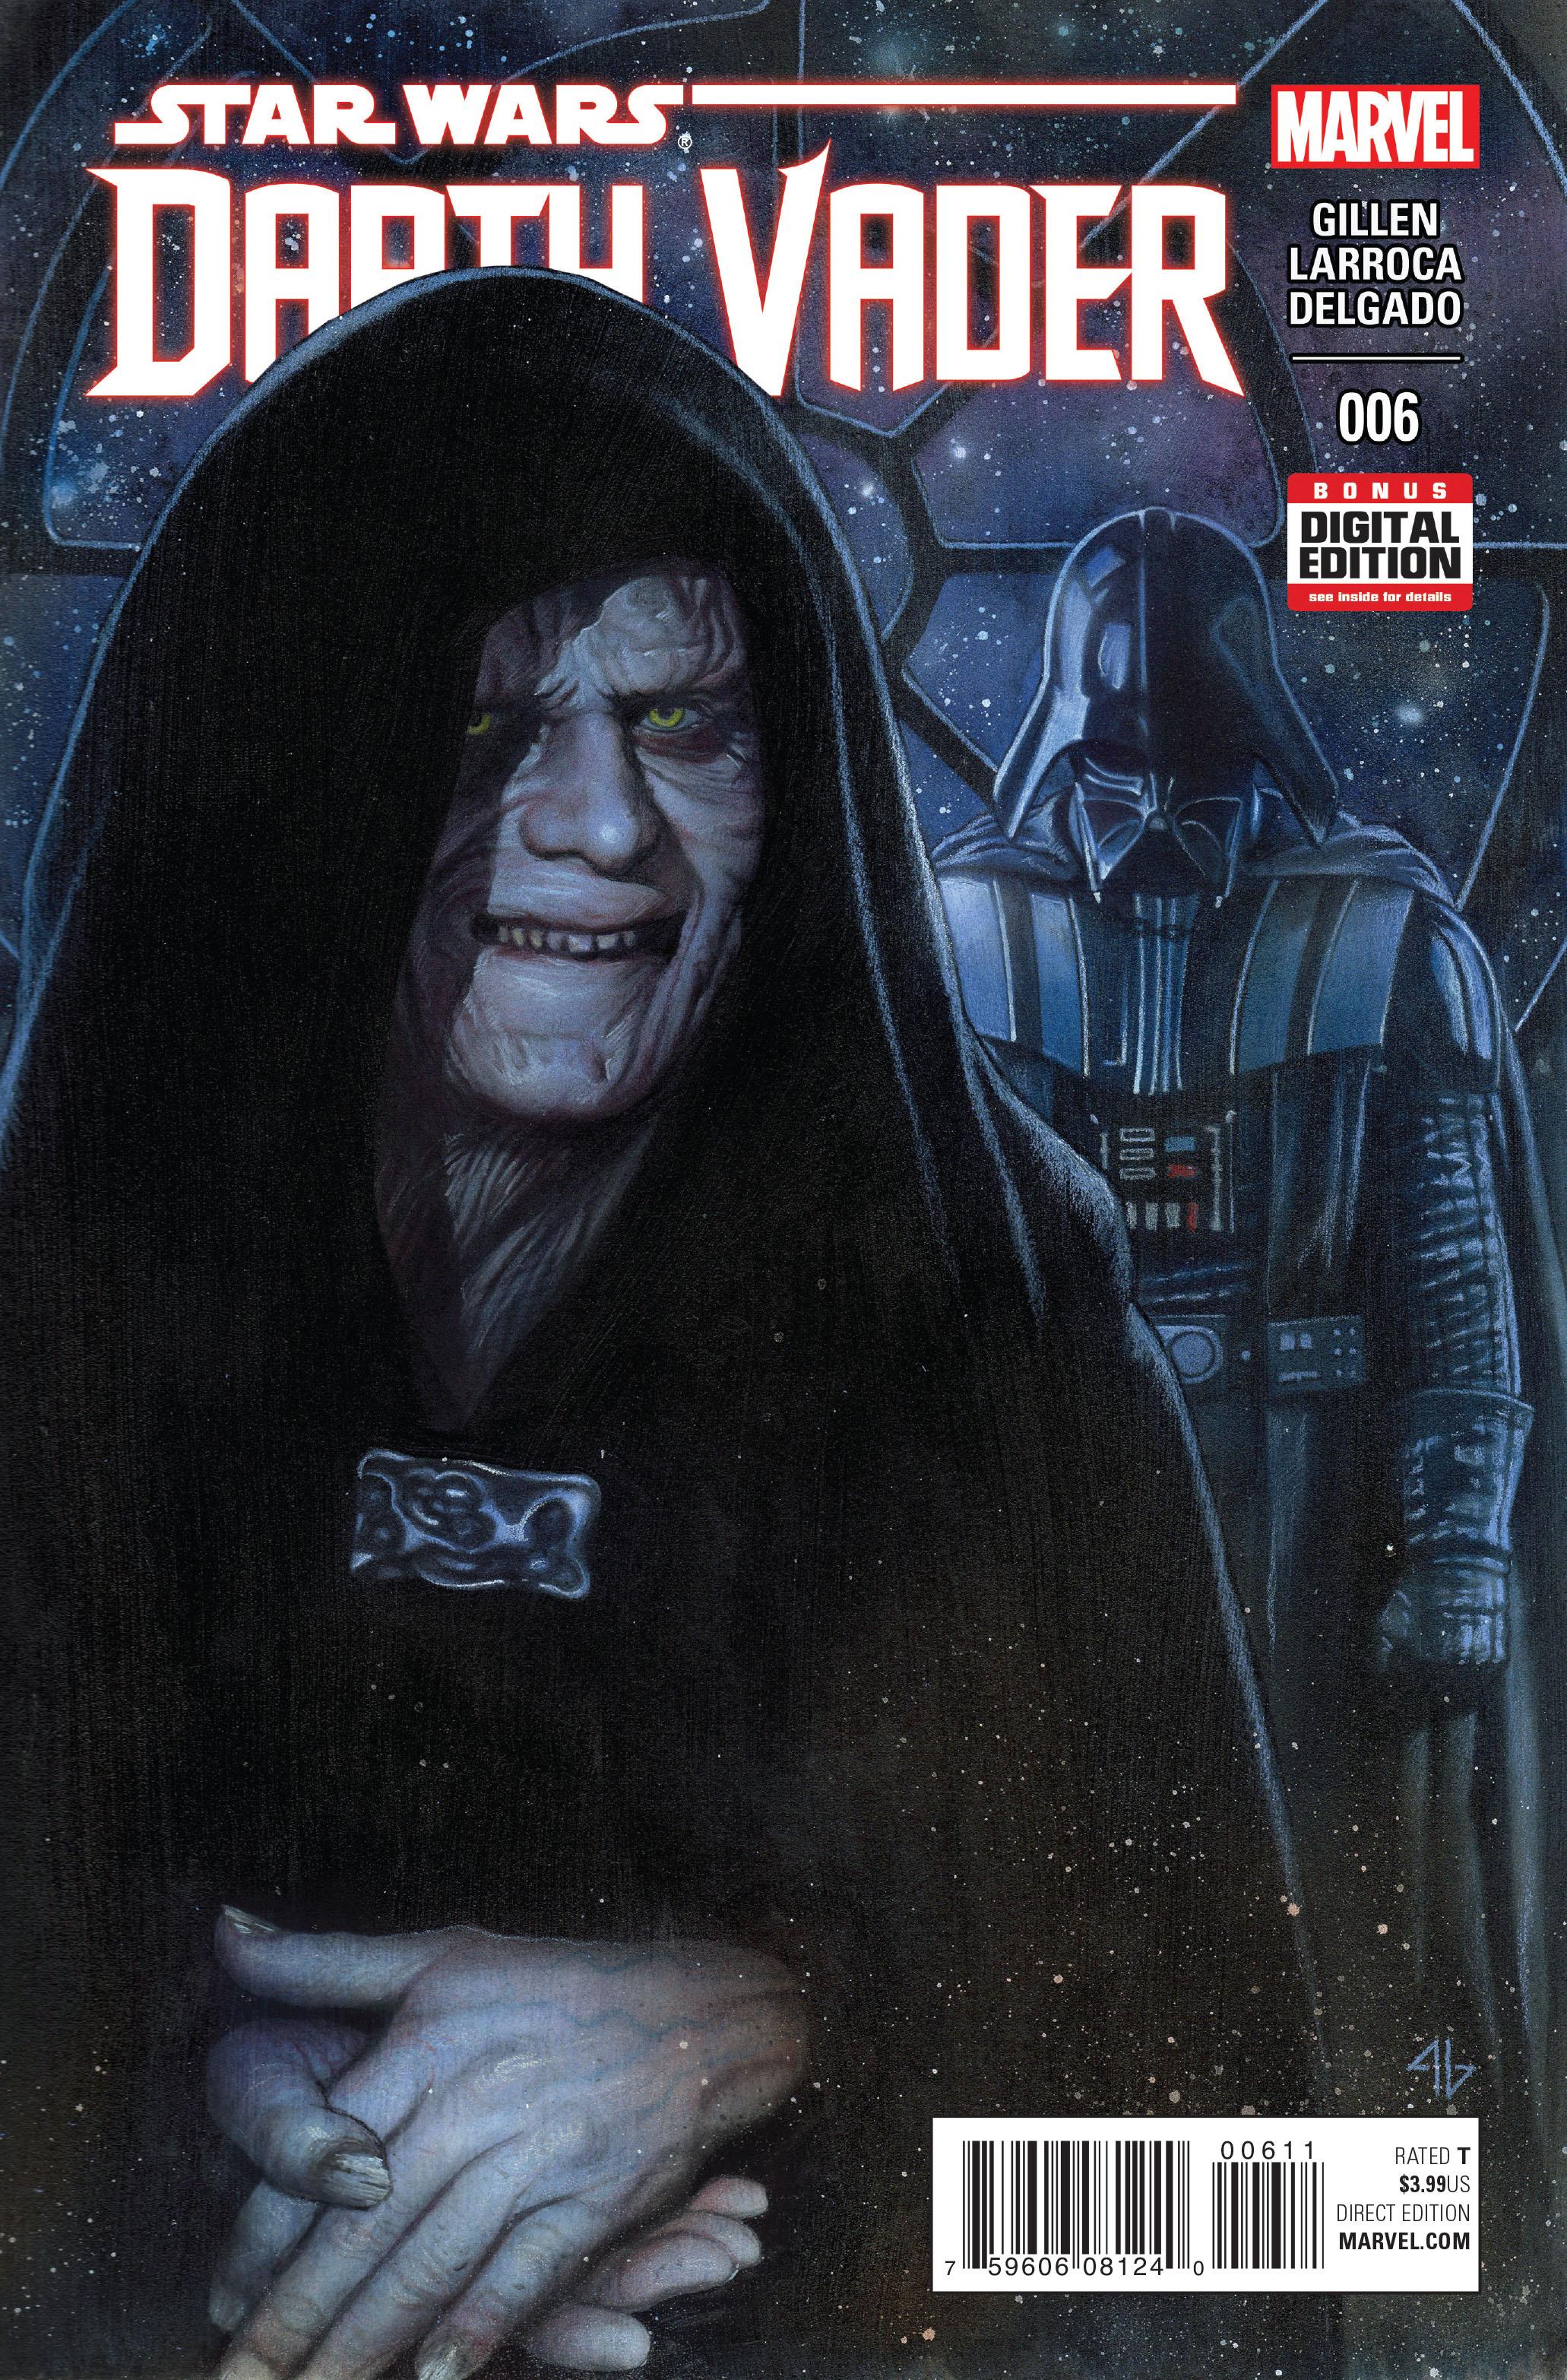 Darth Vader Vol. 1 #6